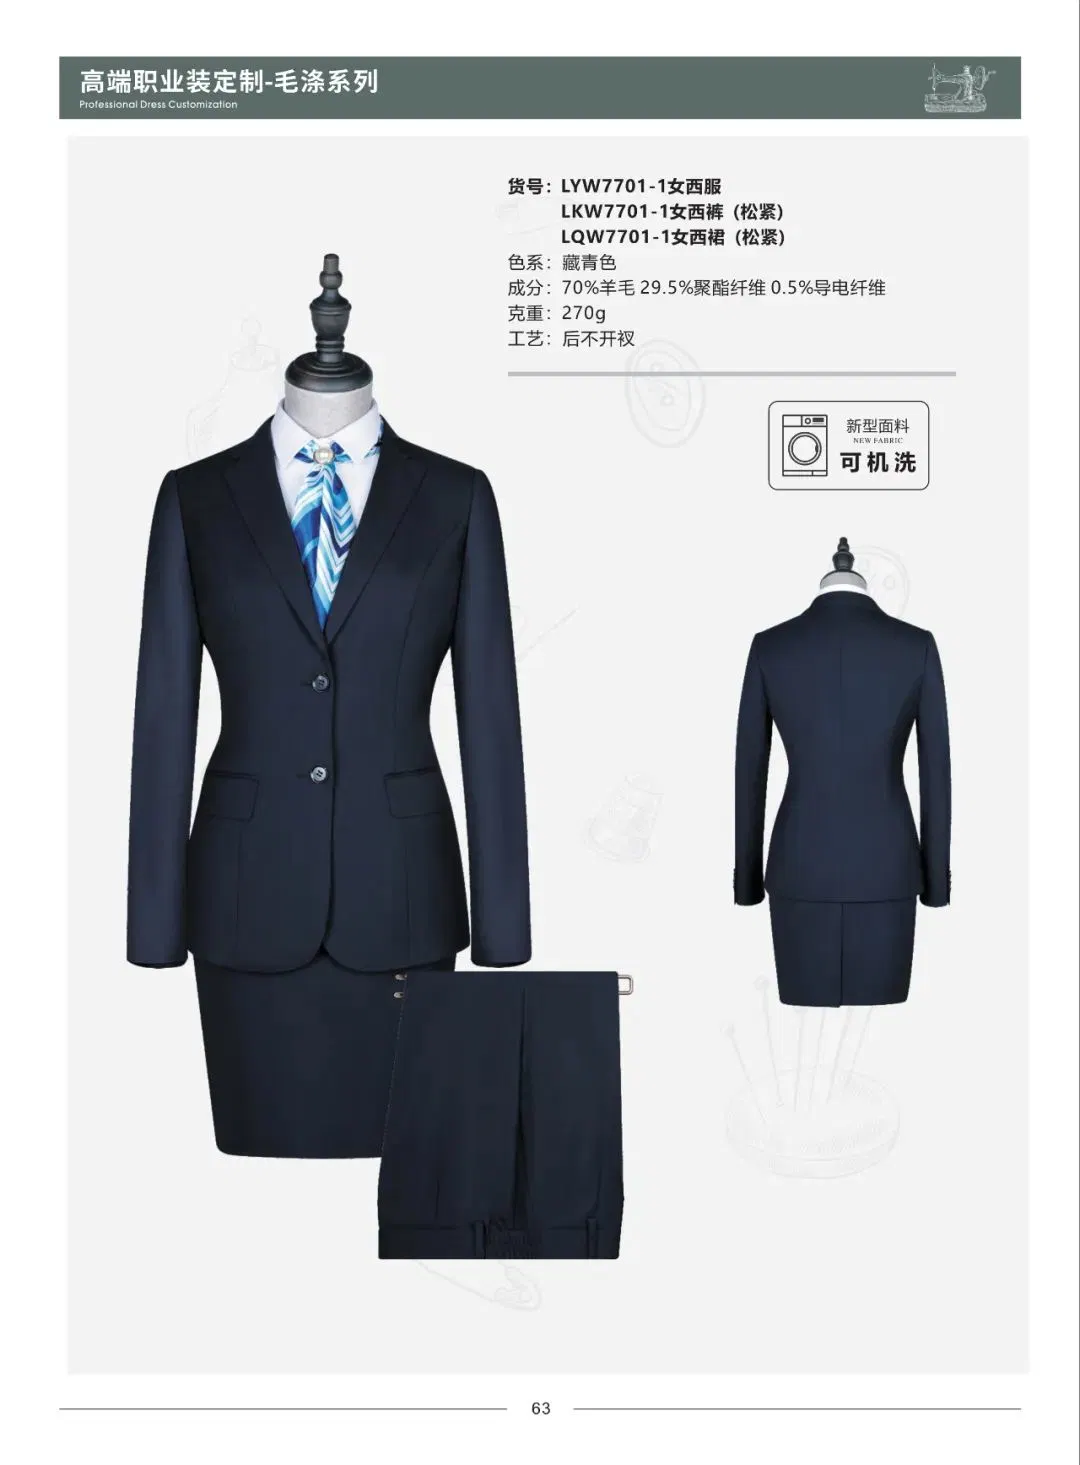 Apparel Fashion Men Business Suit